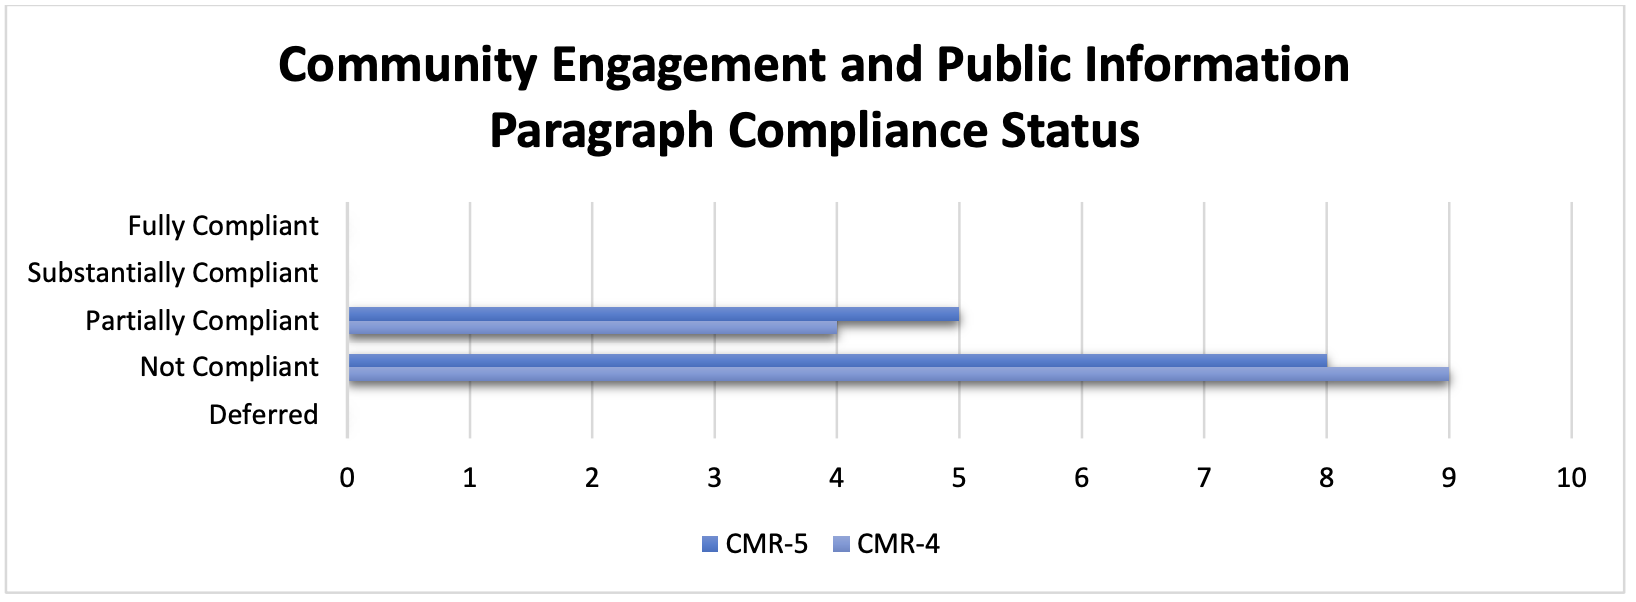 Figure 8. Community Engagement and Public Information: Paragraph Compliance Status